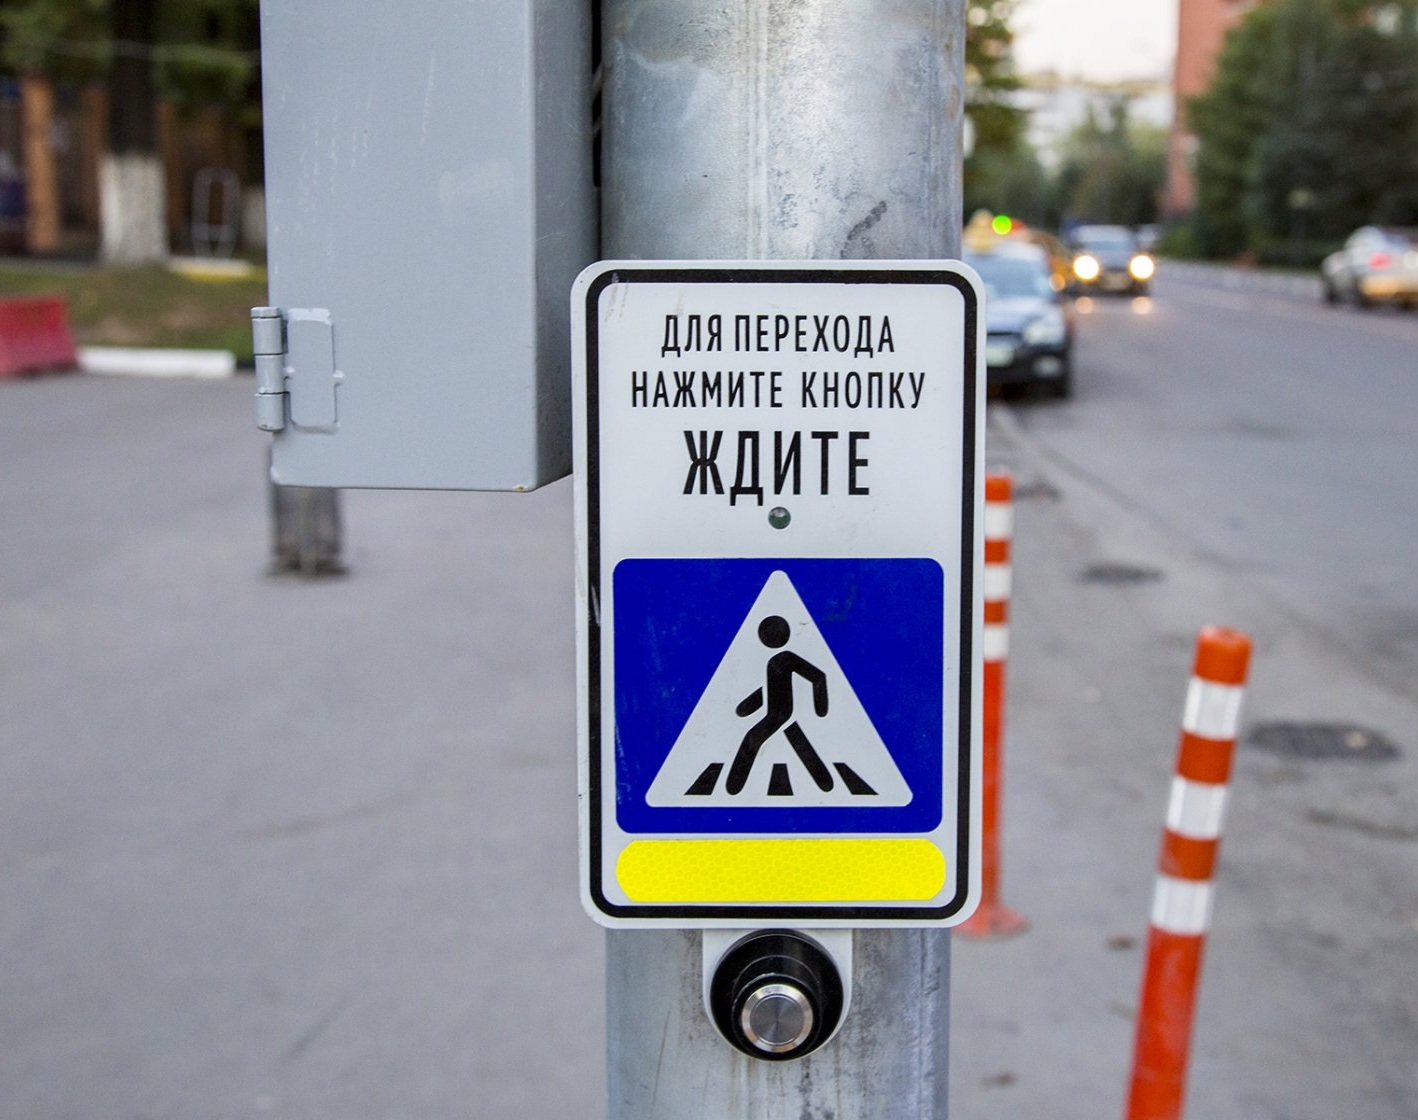 Фото Шутенков перевел светофоры с кнопкой на автоматический режим